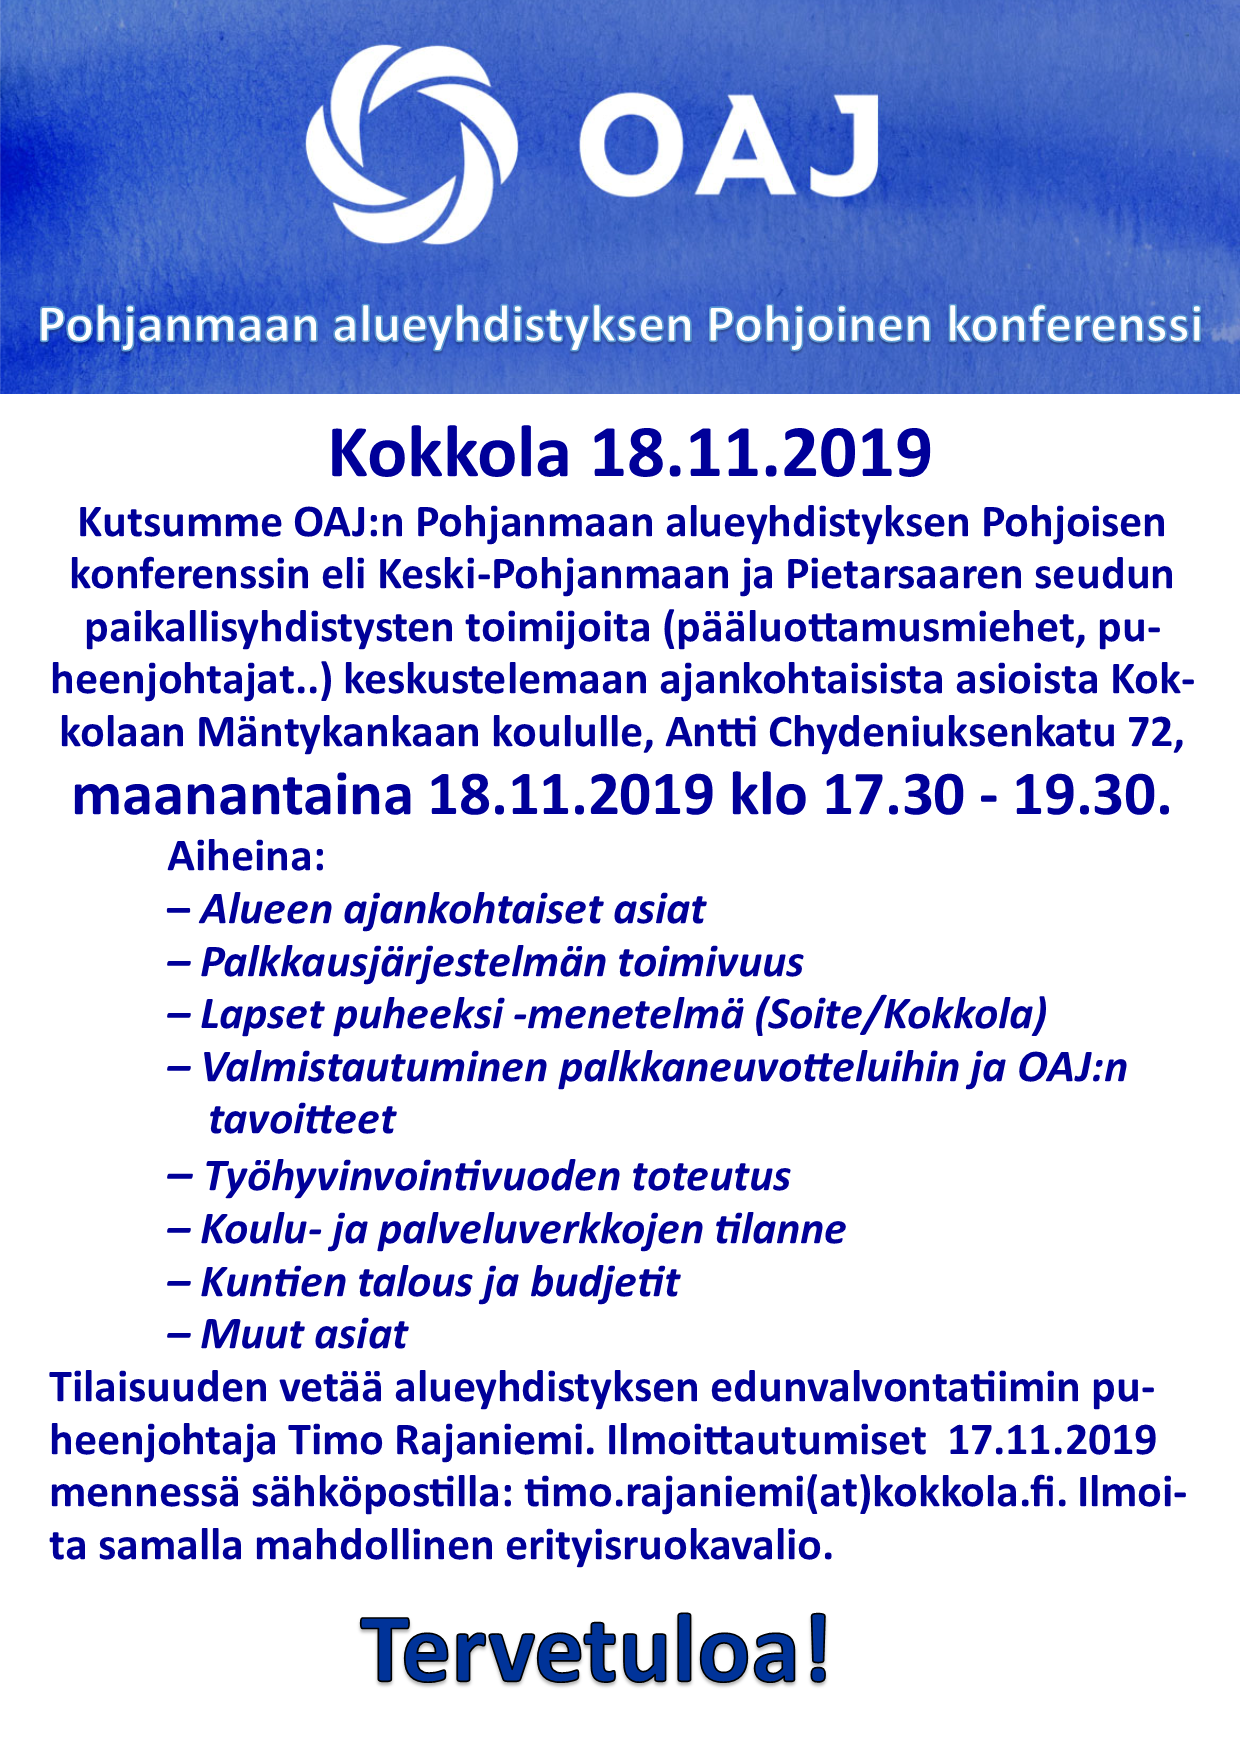 Pohjoinen_konferenssi_18.11.2019.png